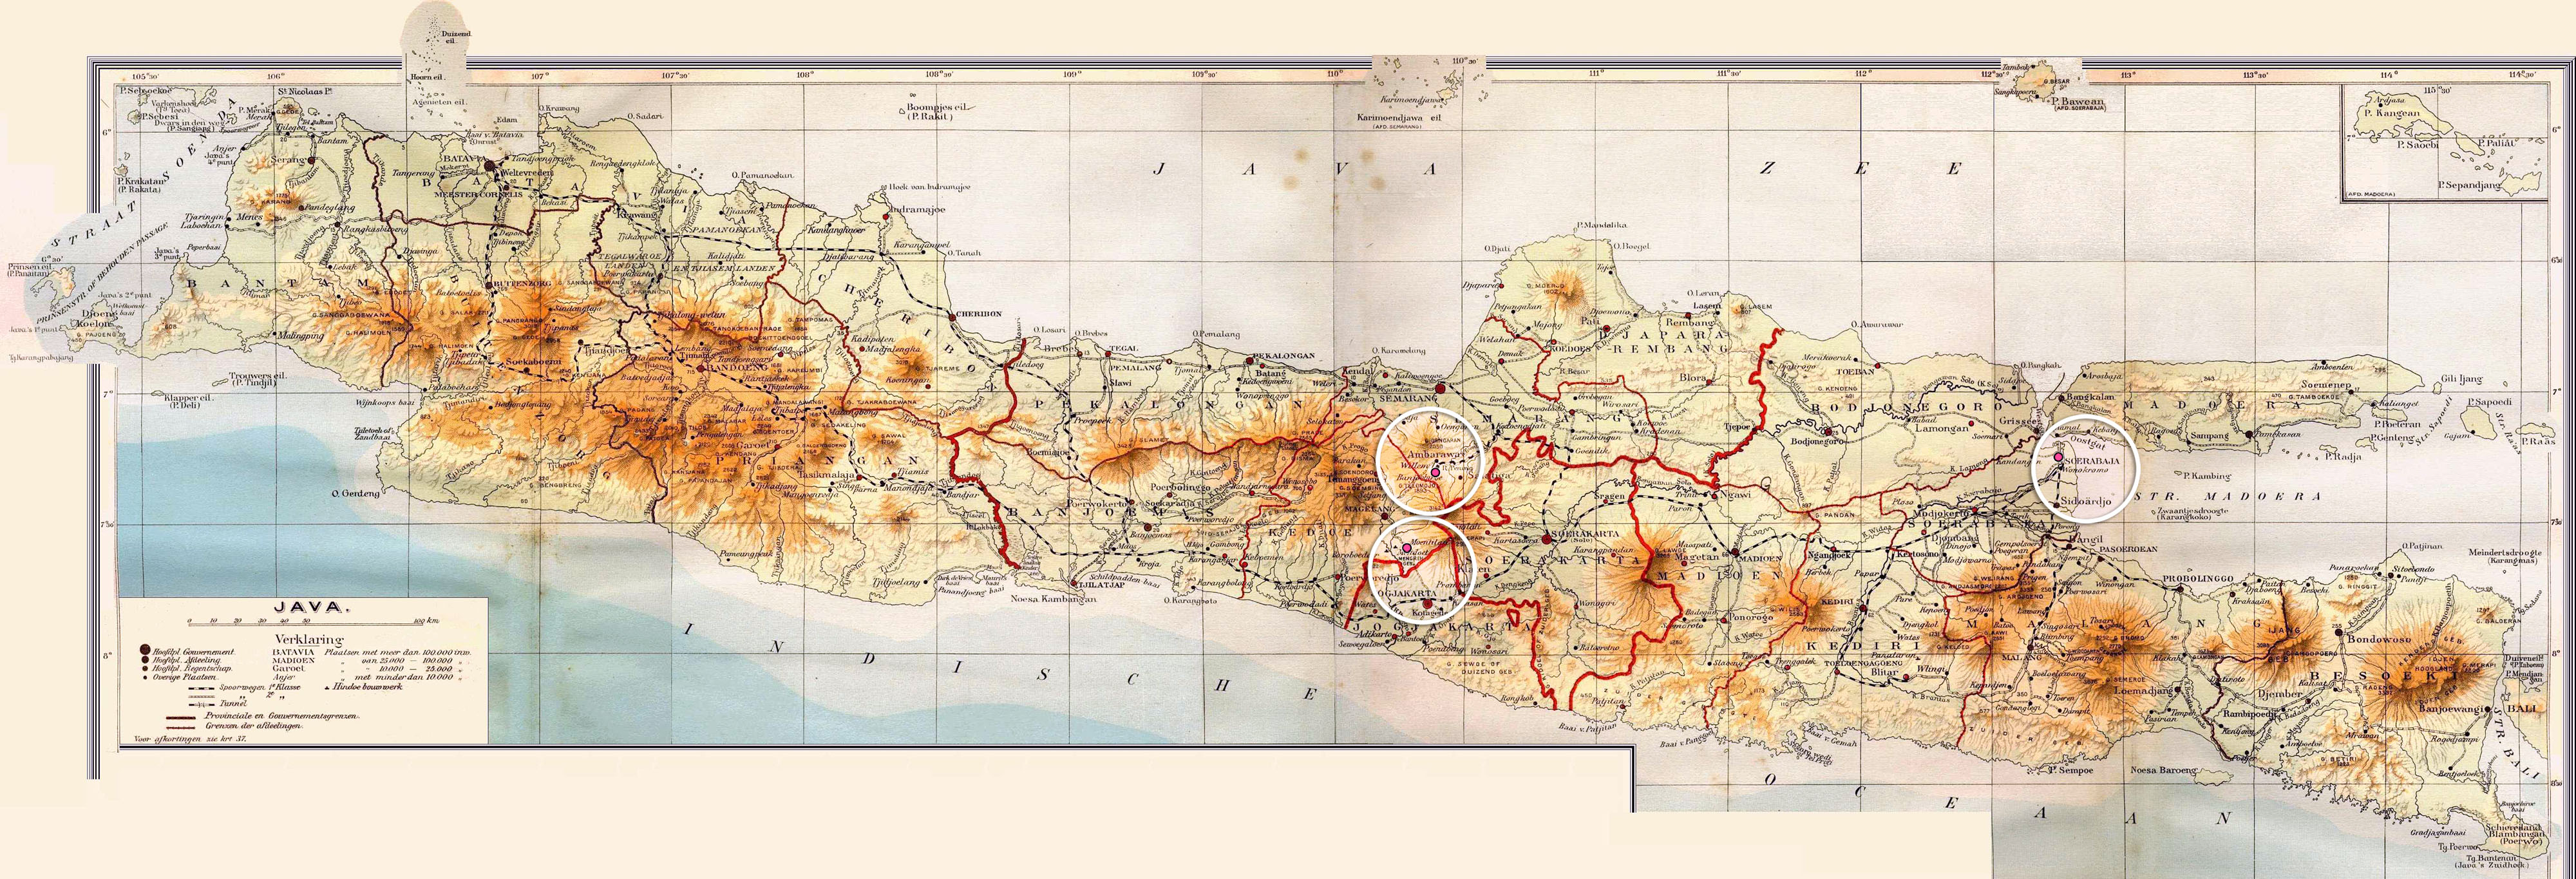 Остров Ява на географической карте